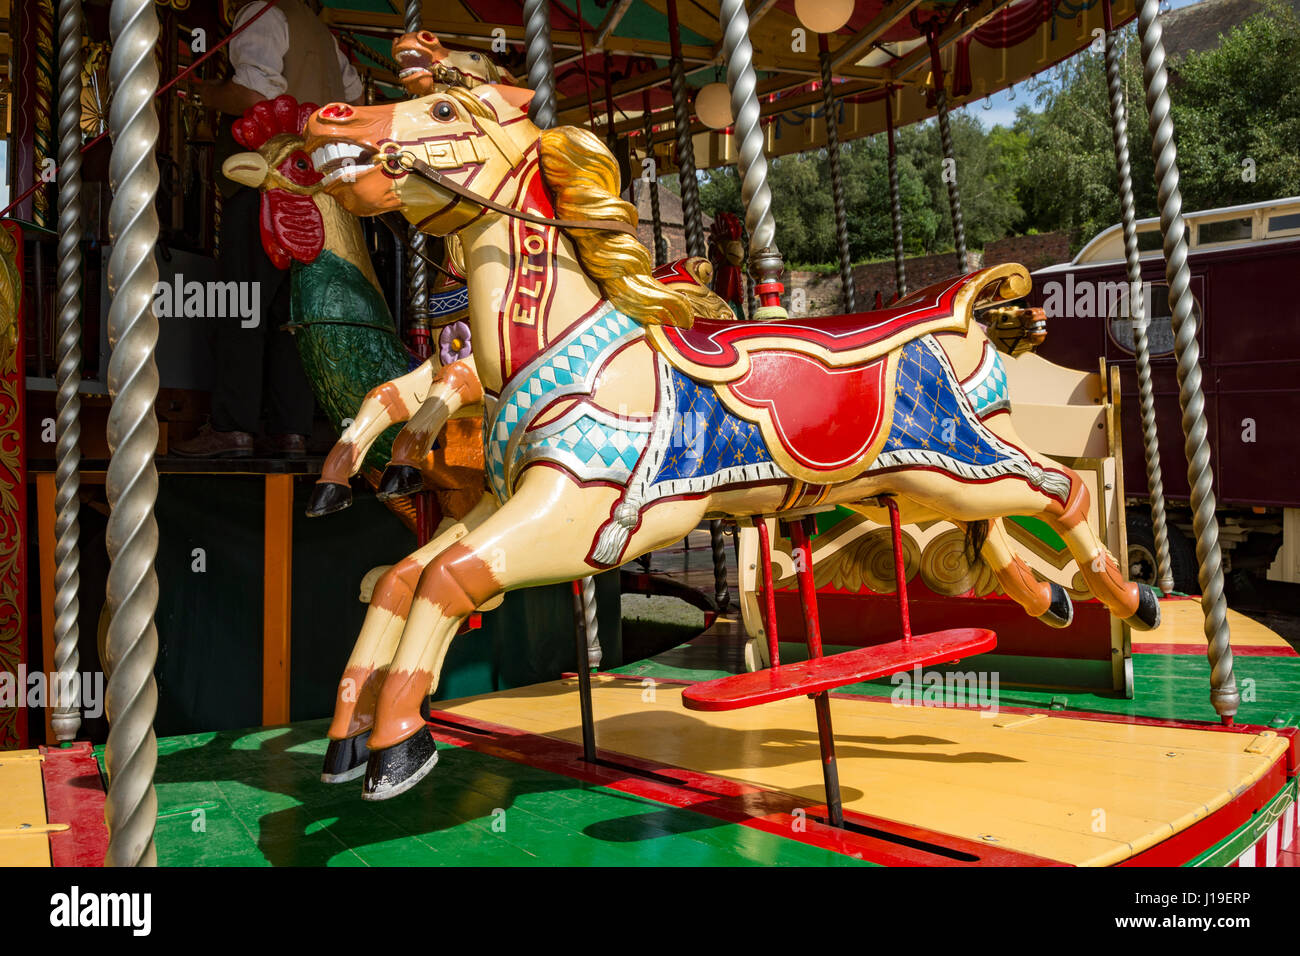 Merry-Go-Round ou au carrousel Blists Hill Victorian Town, près de Madeley, Shropshire, England, UK. Banque D'Images